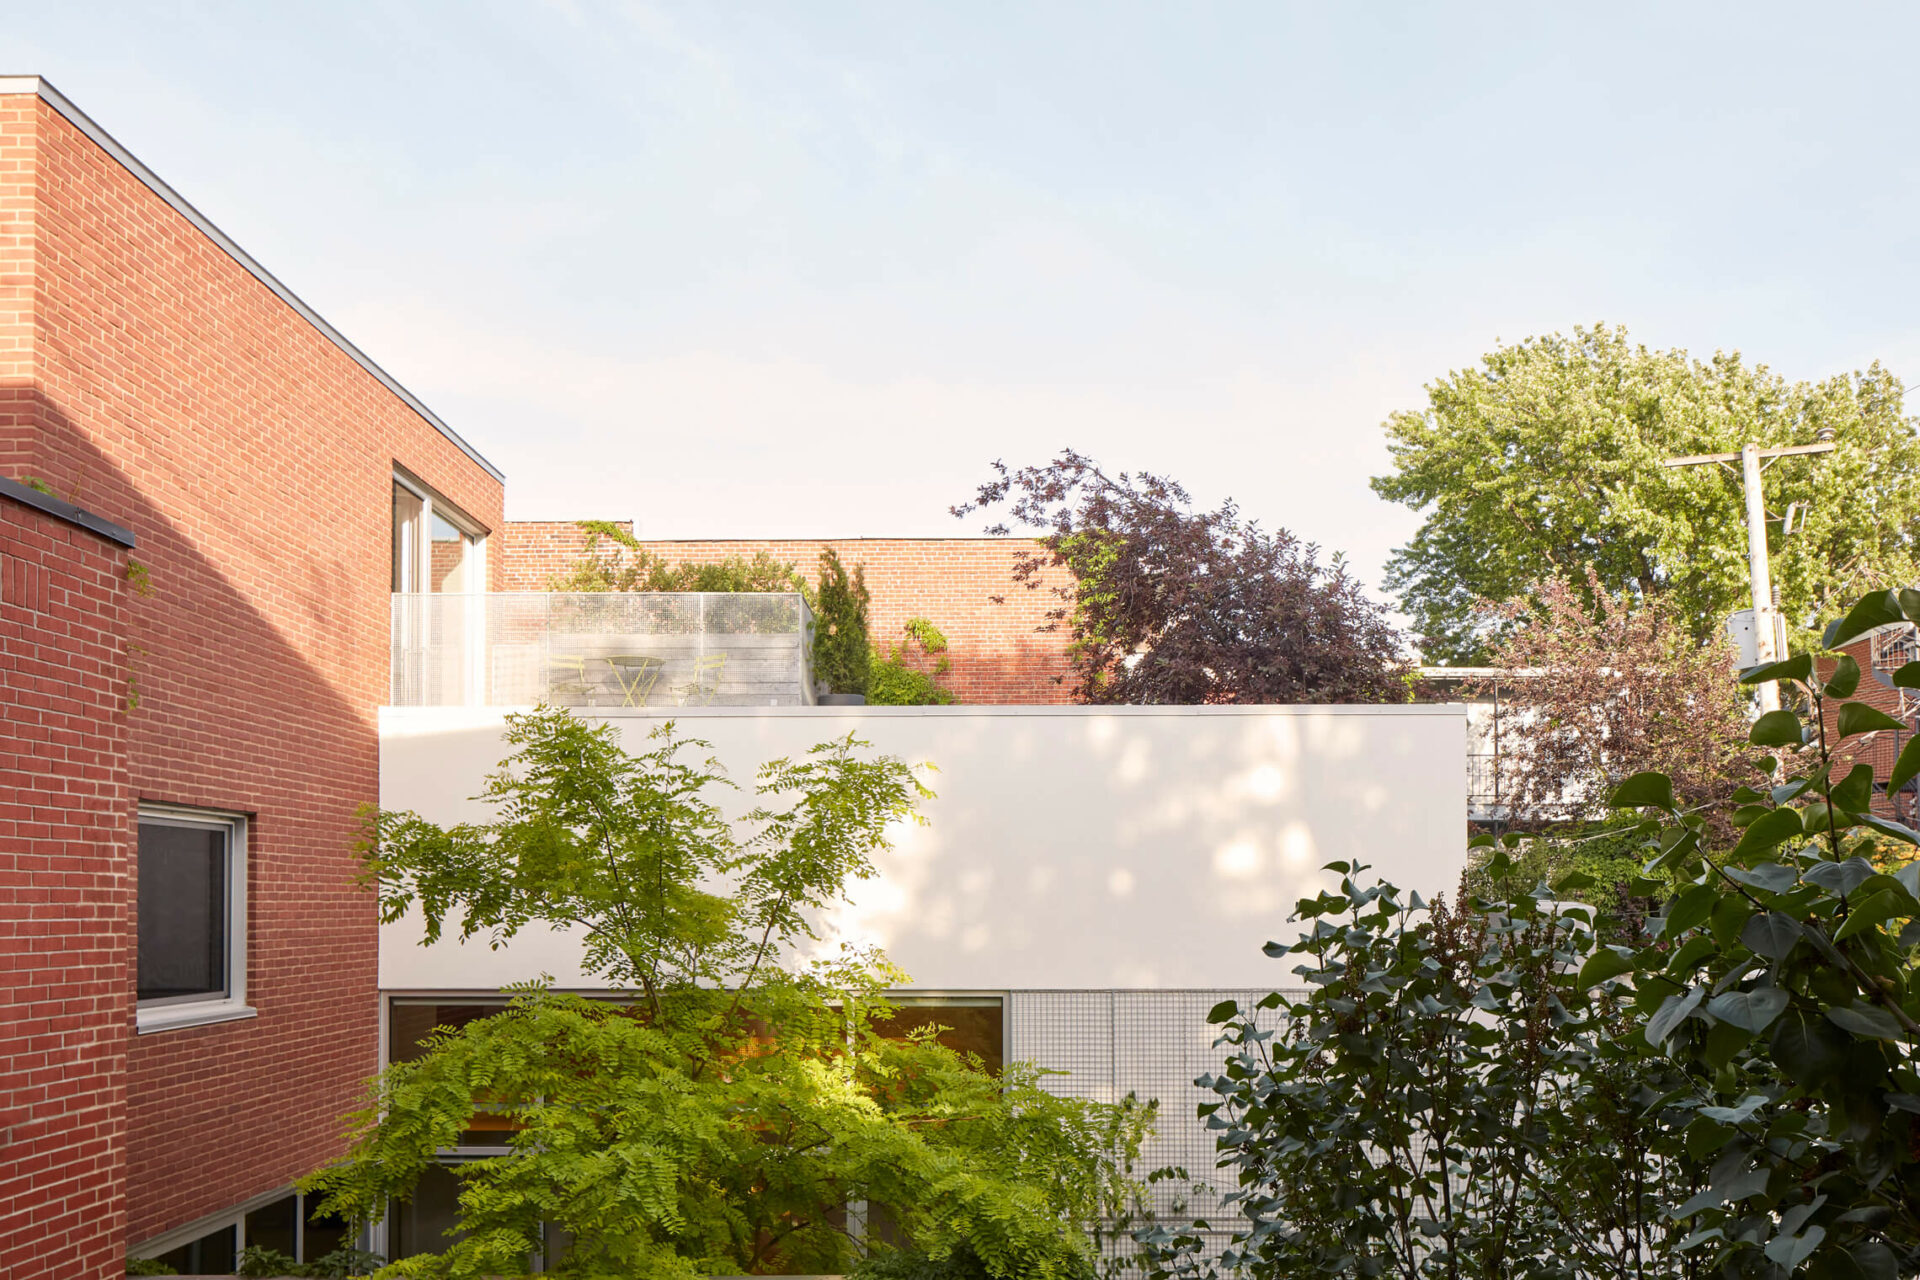 rénovation agrandissement duplex Montréal brique rouge cour intérieure toit-terrasse jardin toit végétalisé · la Shed architecture